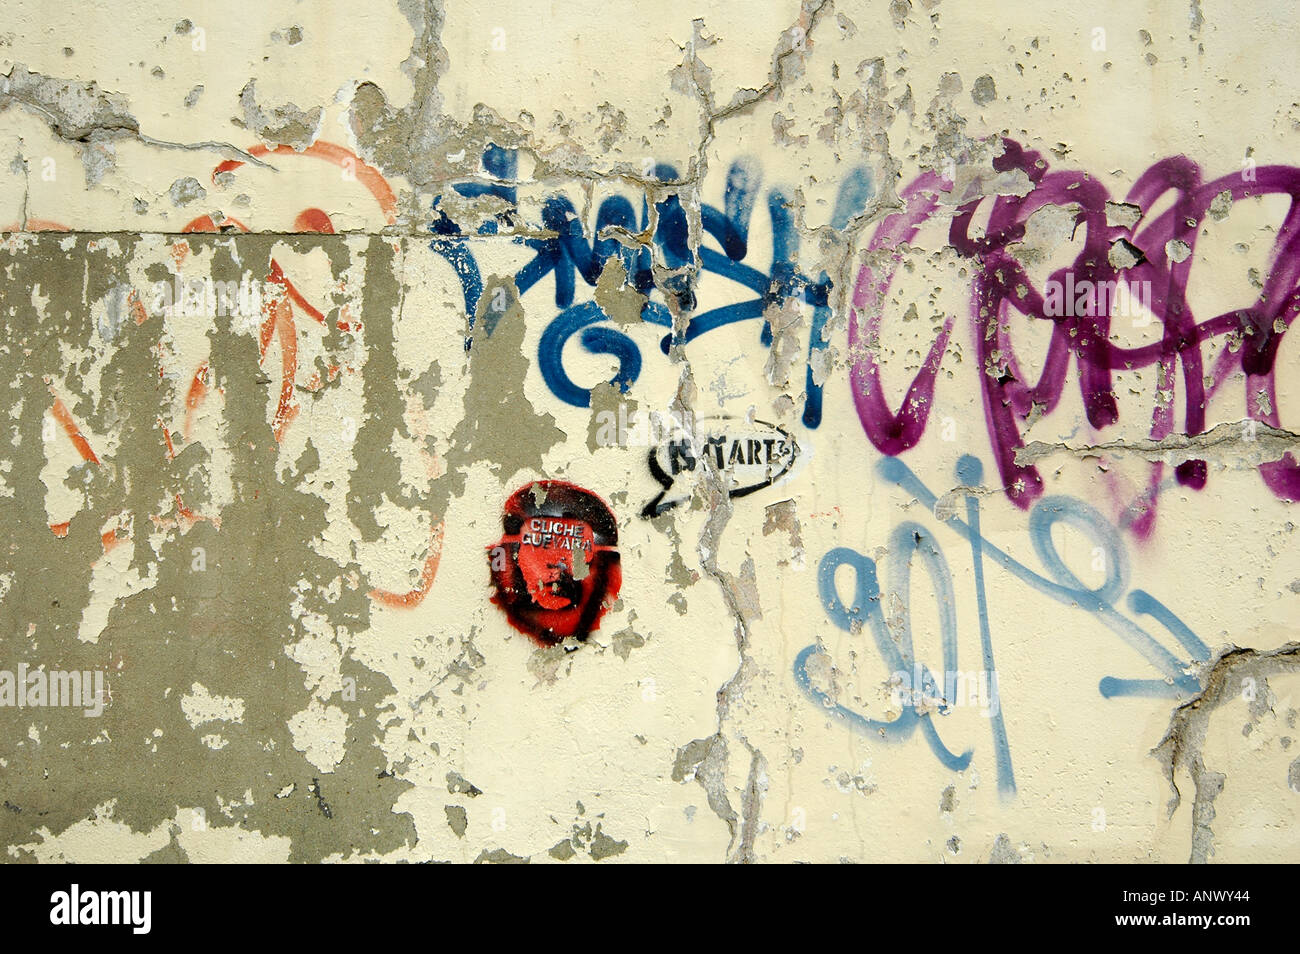 graffitti graffiti grafiti on wall showing person che guevara icon logo Stock Photo